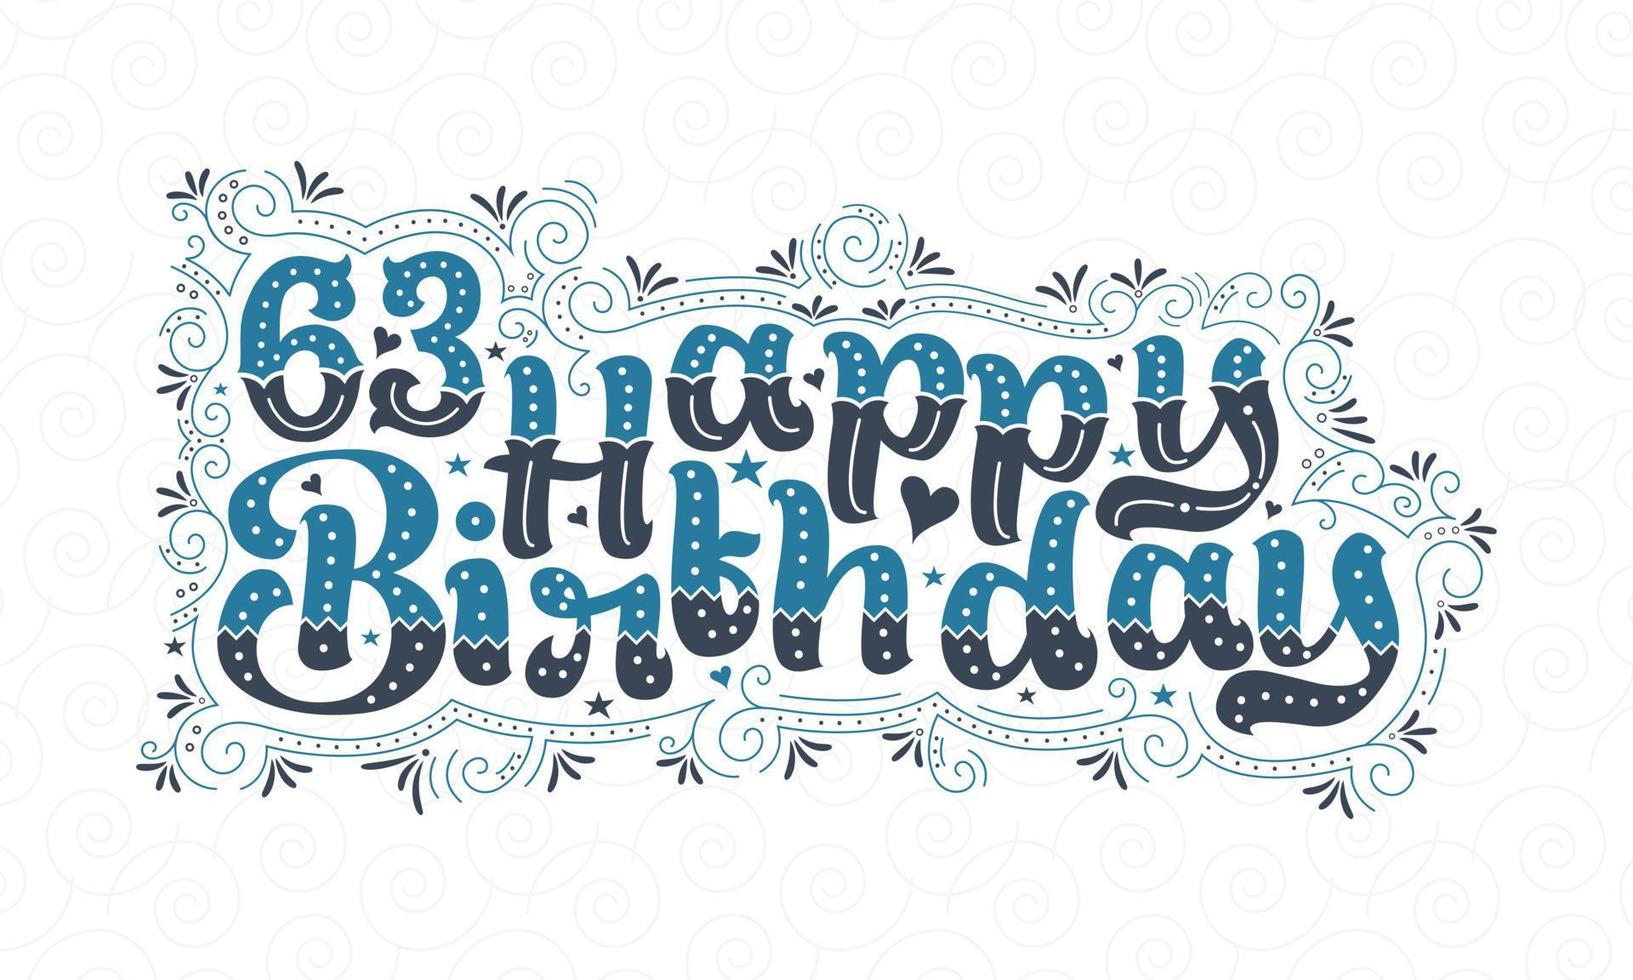 63a scritta di buon compleanno, bellissimo design tipografico di 63 anni con punti, linee e foglie blu e nere. vettore